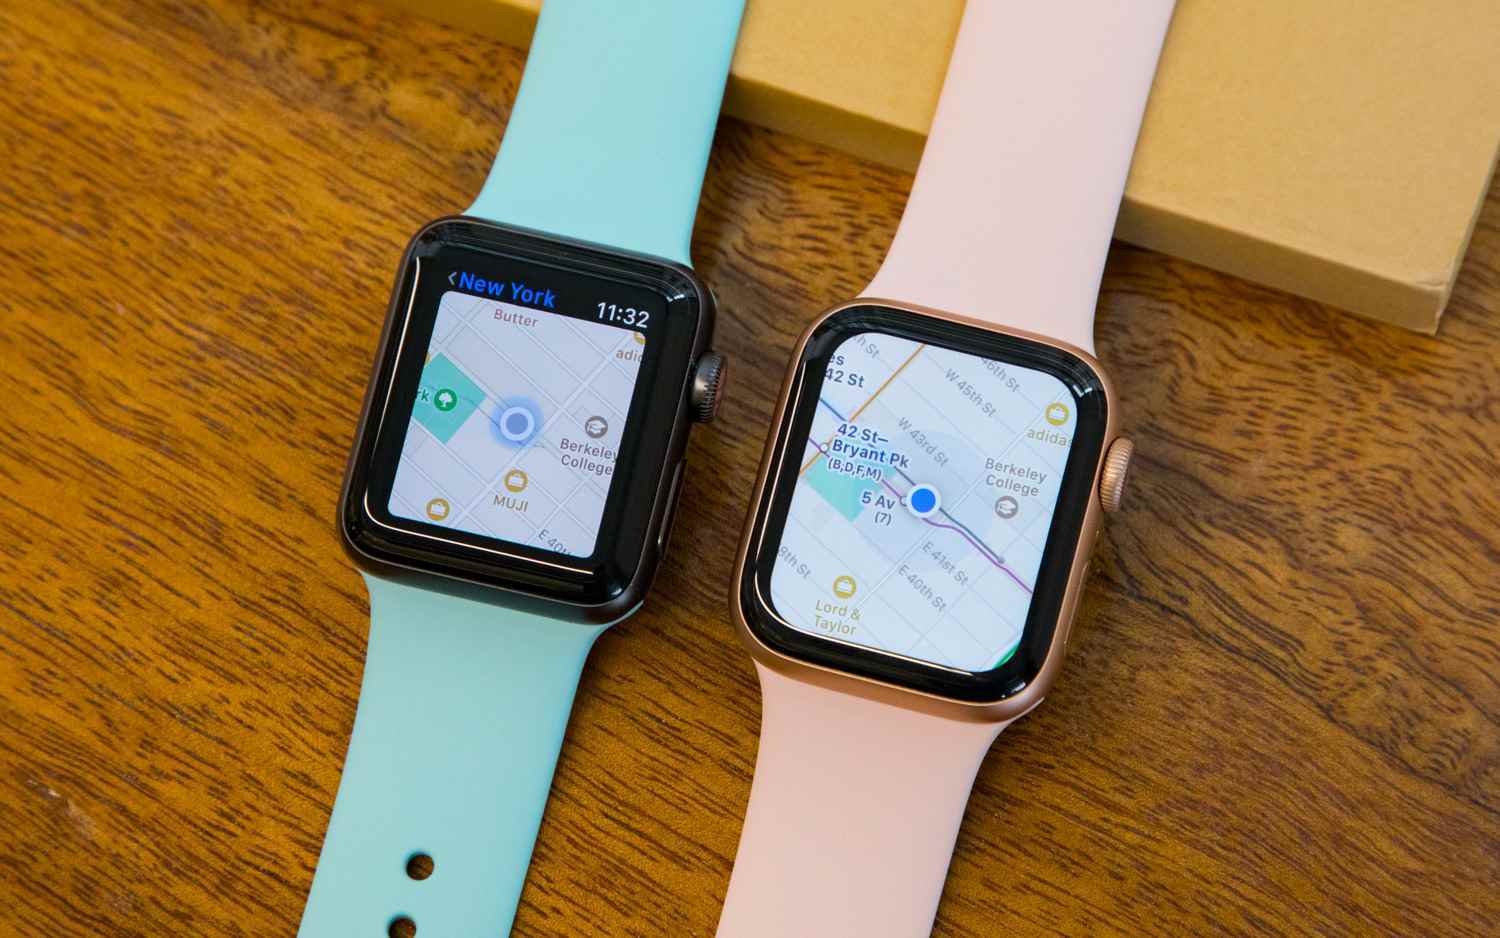 Часы apple сравнение. Часы эпл вотч 3. Apple watch Series 4. Series 3 Apple watch vs 4. Экран эпл вотч 3.